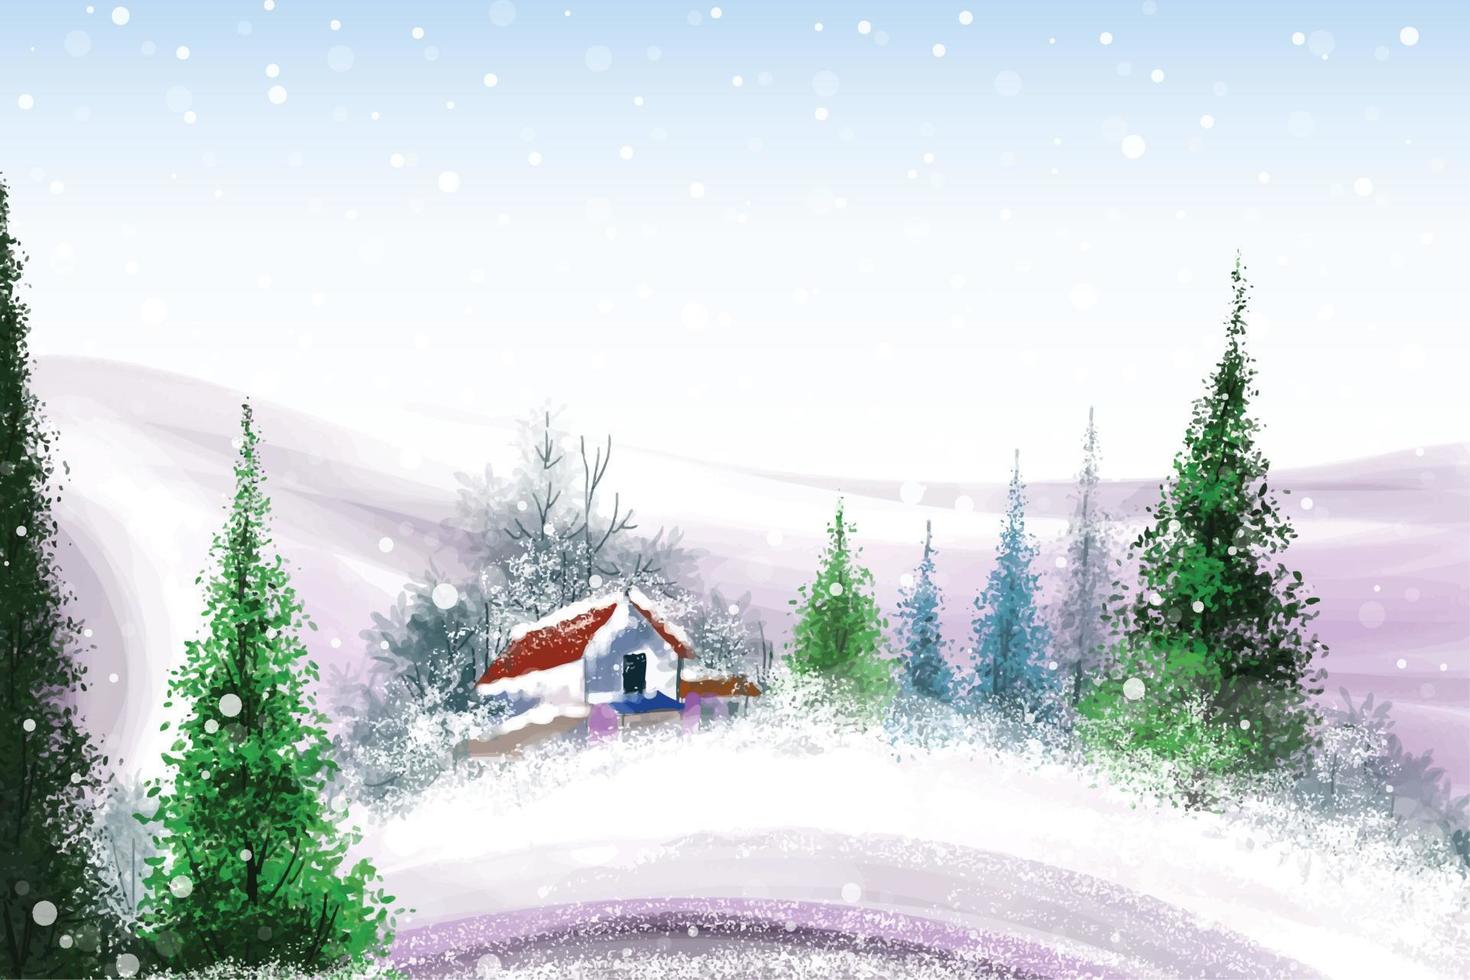 desenho em aquarela pintado à mão para fundo de temporada de natal e feliz ano novo vetor